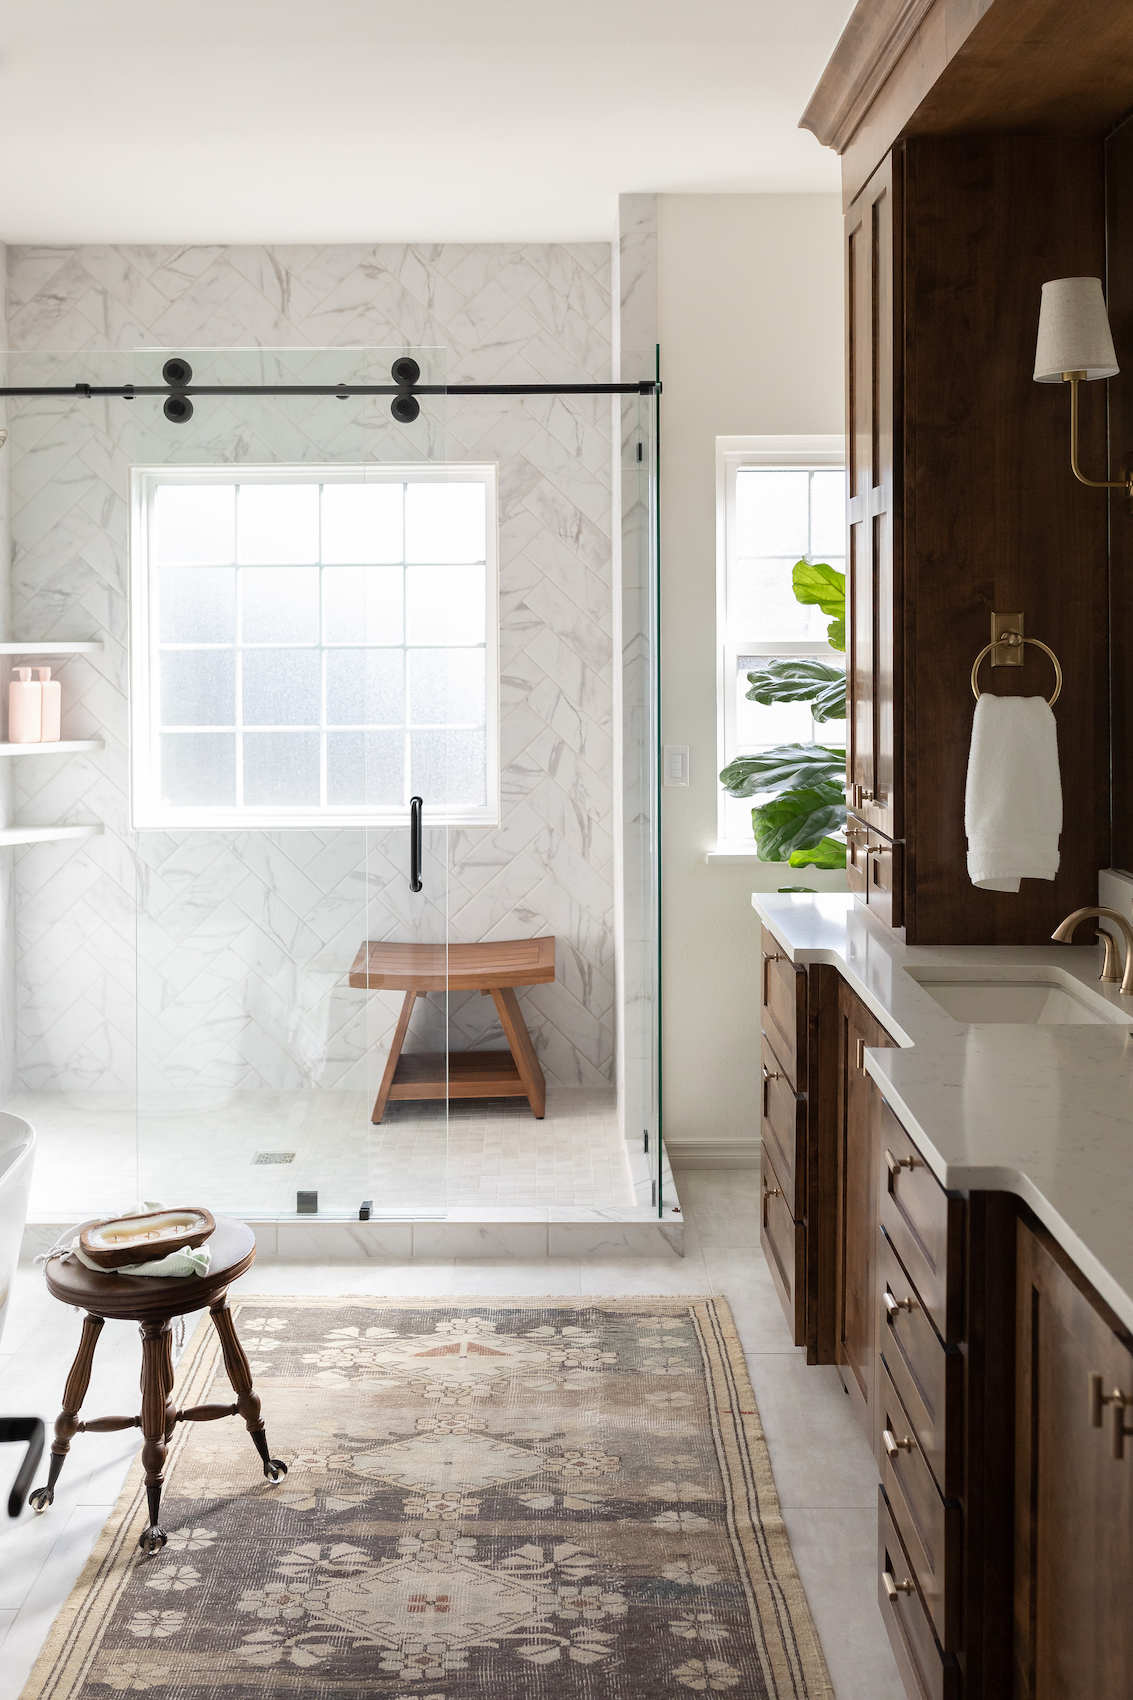 Bathroom by Modern Prairie interior designer Cortney McClure in Effect Magazine